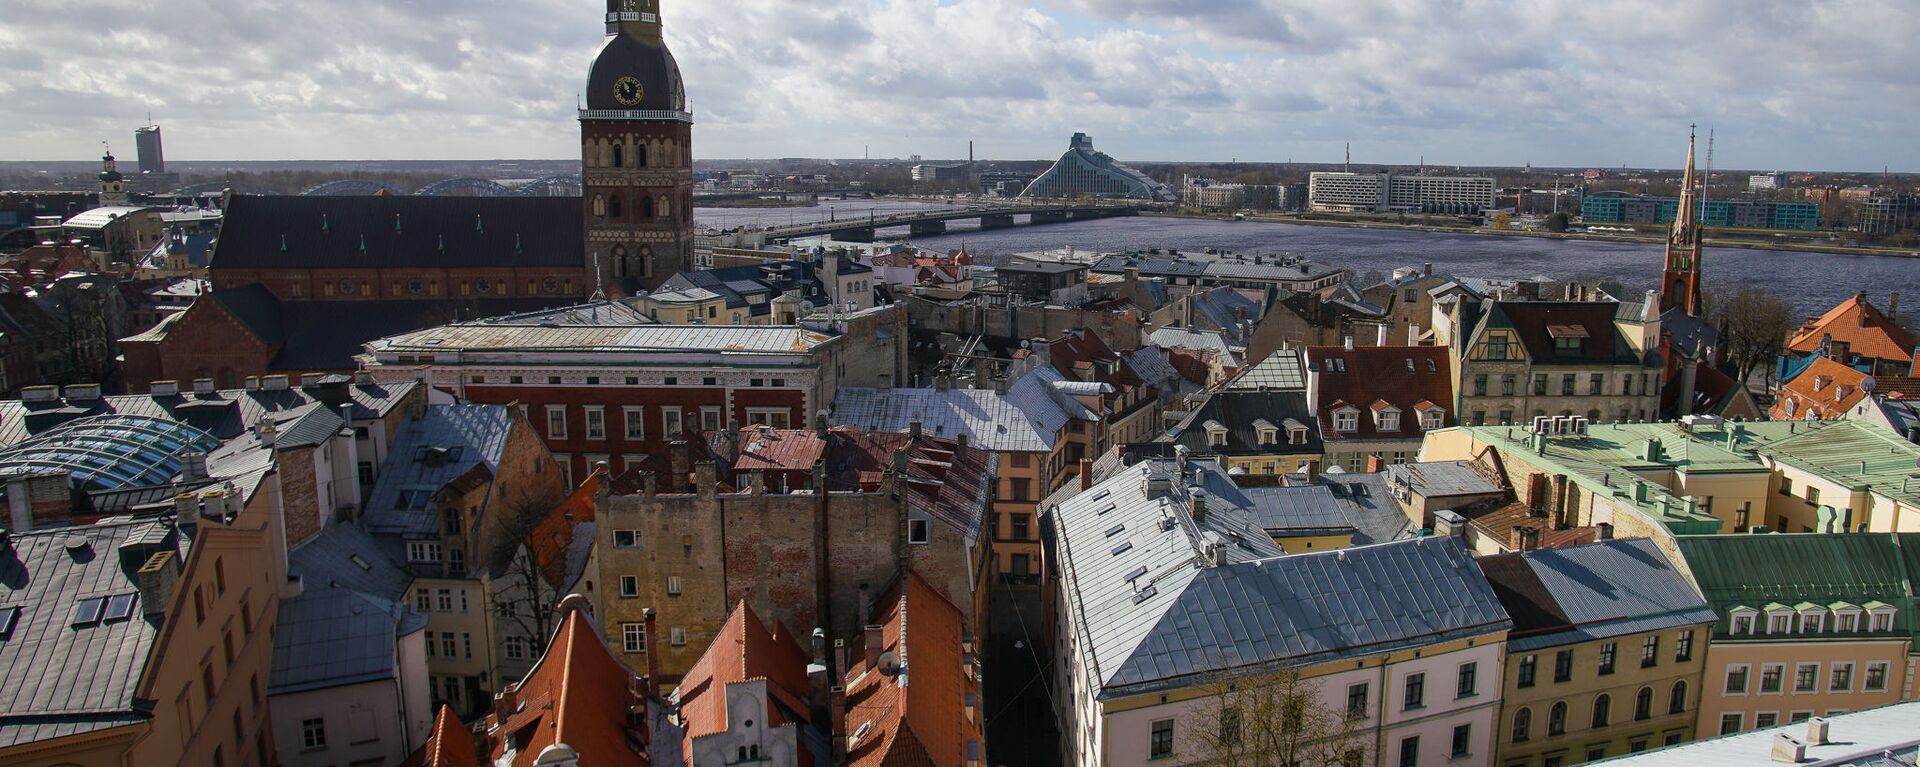 В Риге демонтировали петушка с церкви Св.Иакова, чтобы отреставрировать и заменить позолоту - Sputnik Латвия, 1920, 26.08.2021